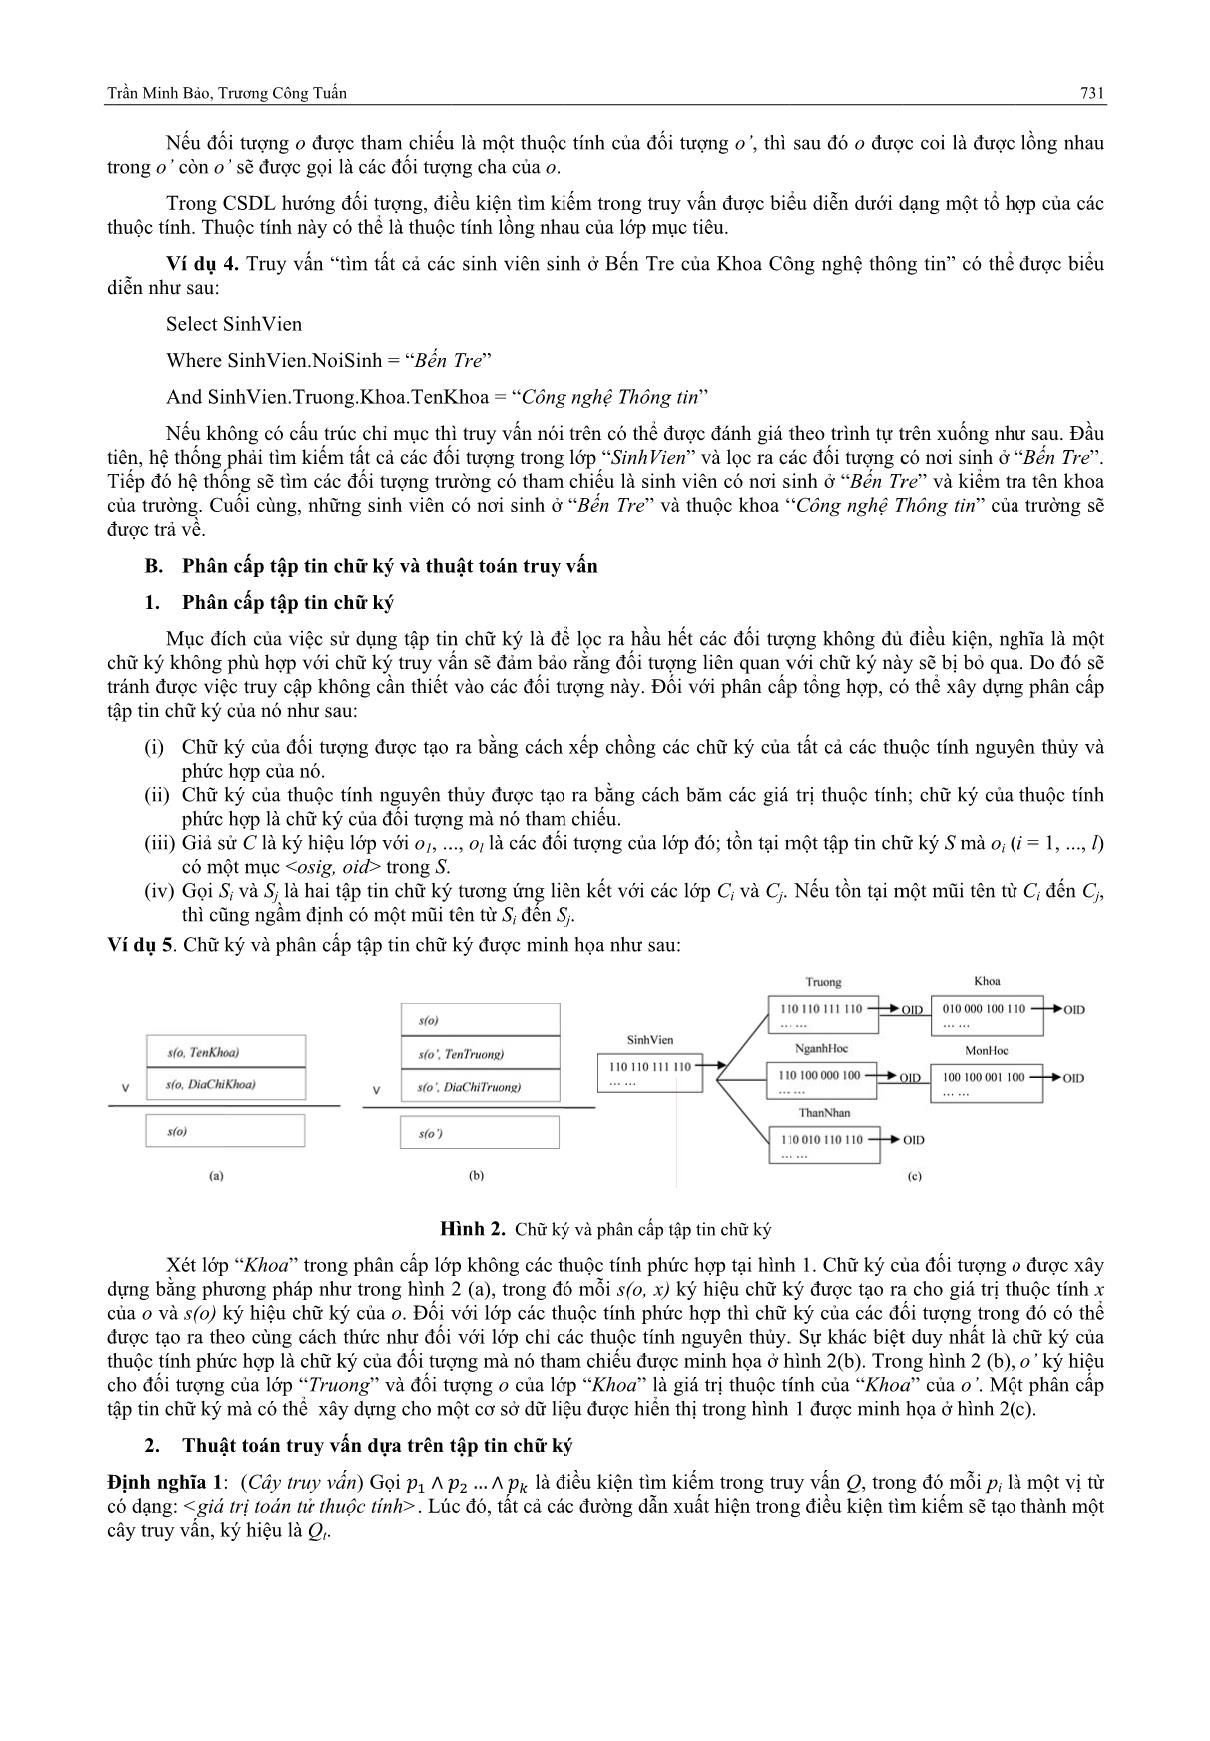 Truy vấn hướng đối tượng dựa trên phân cấp tập tin chữ ký và cây SD-Tree trang 3